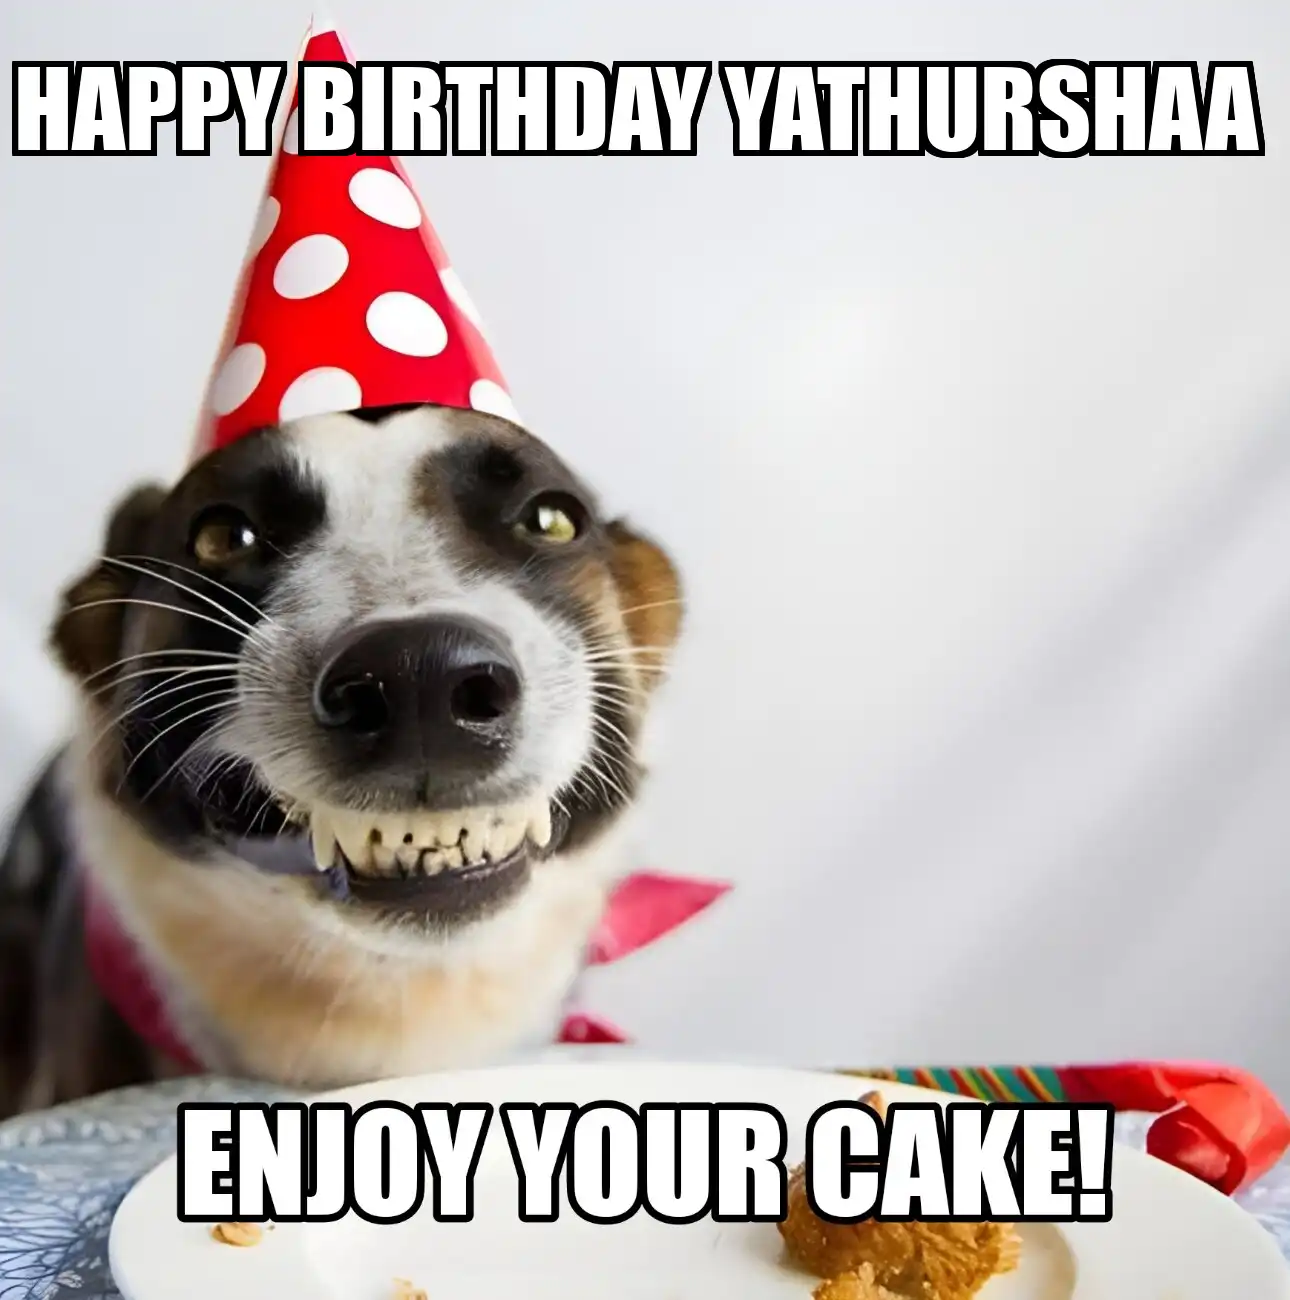 Happy Birthday Yathurshaa Enjoy Your Cake Dog Meme